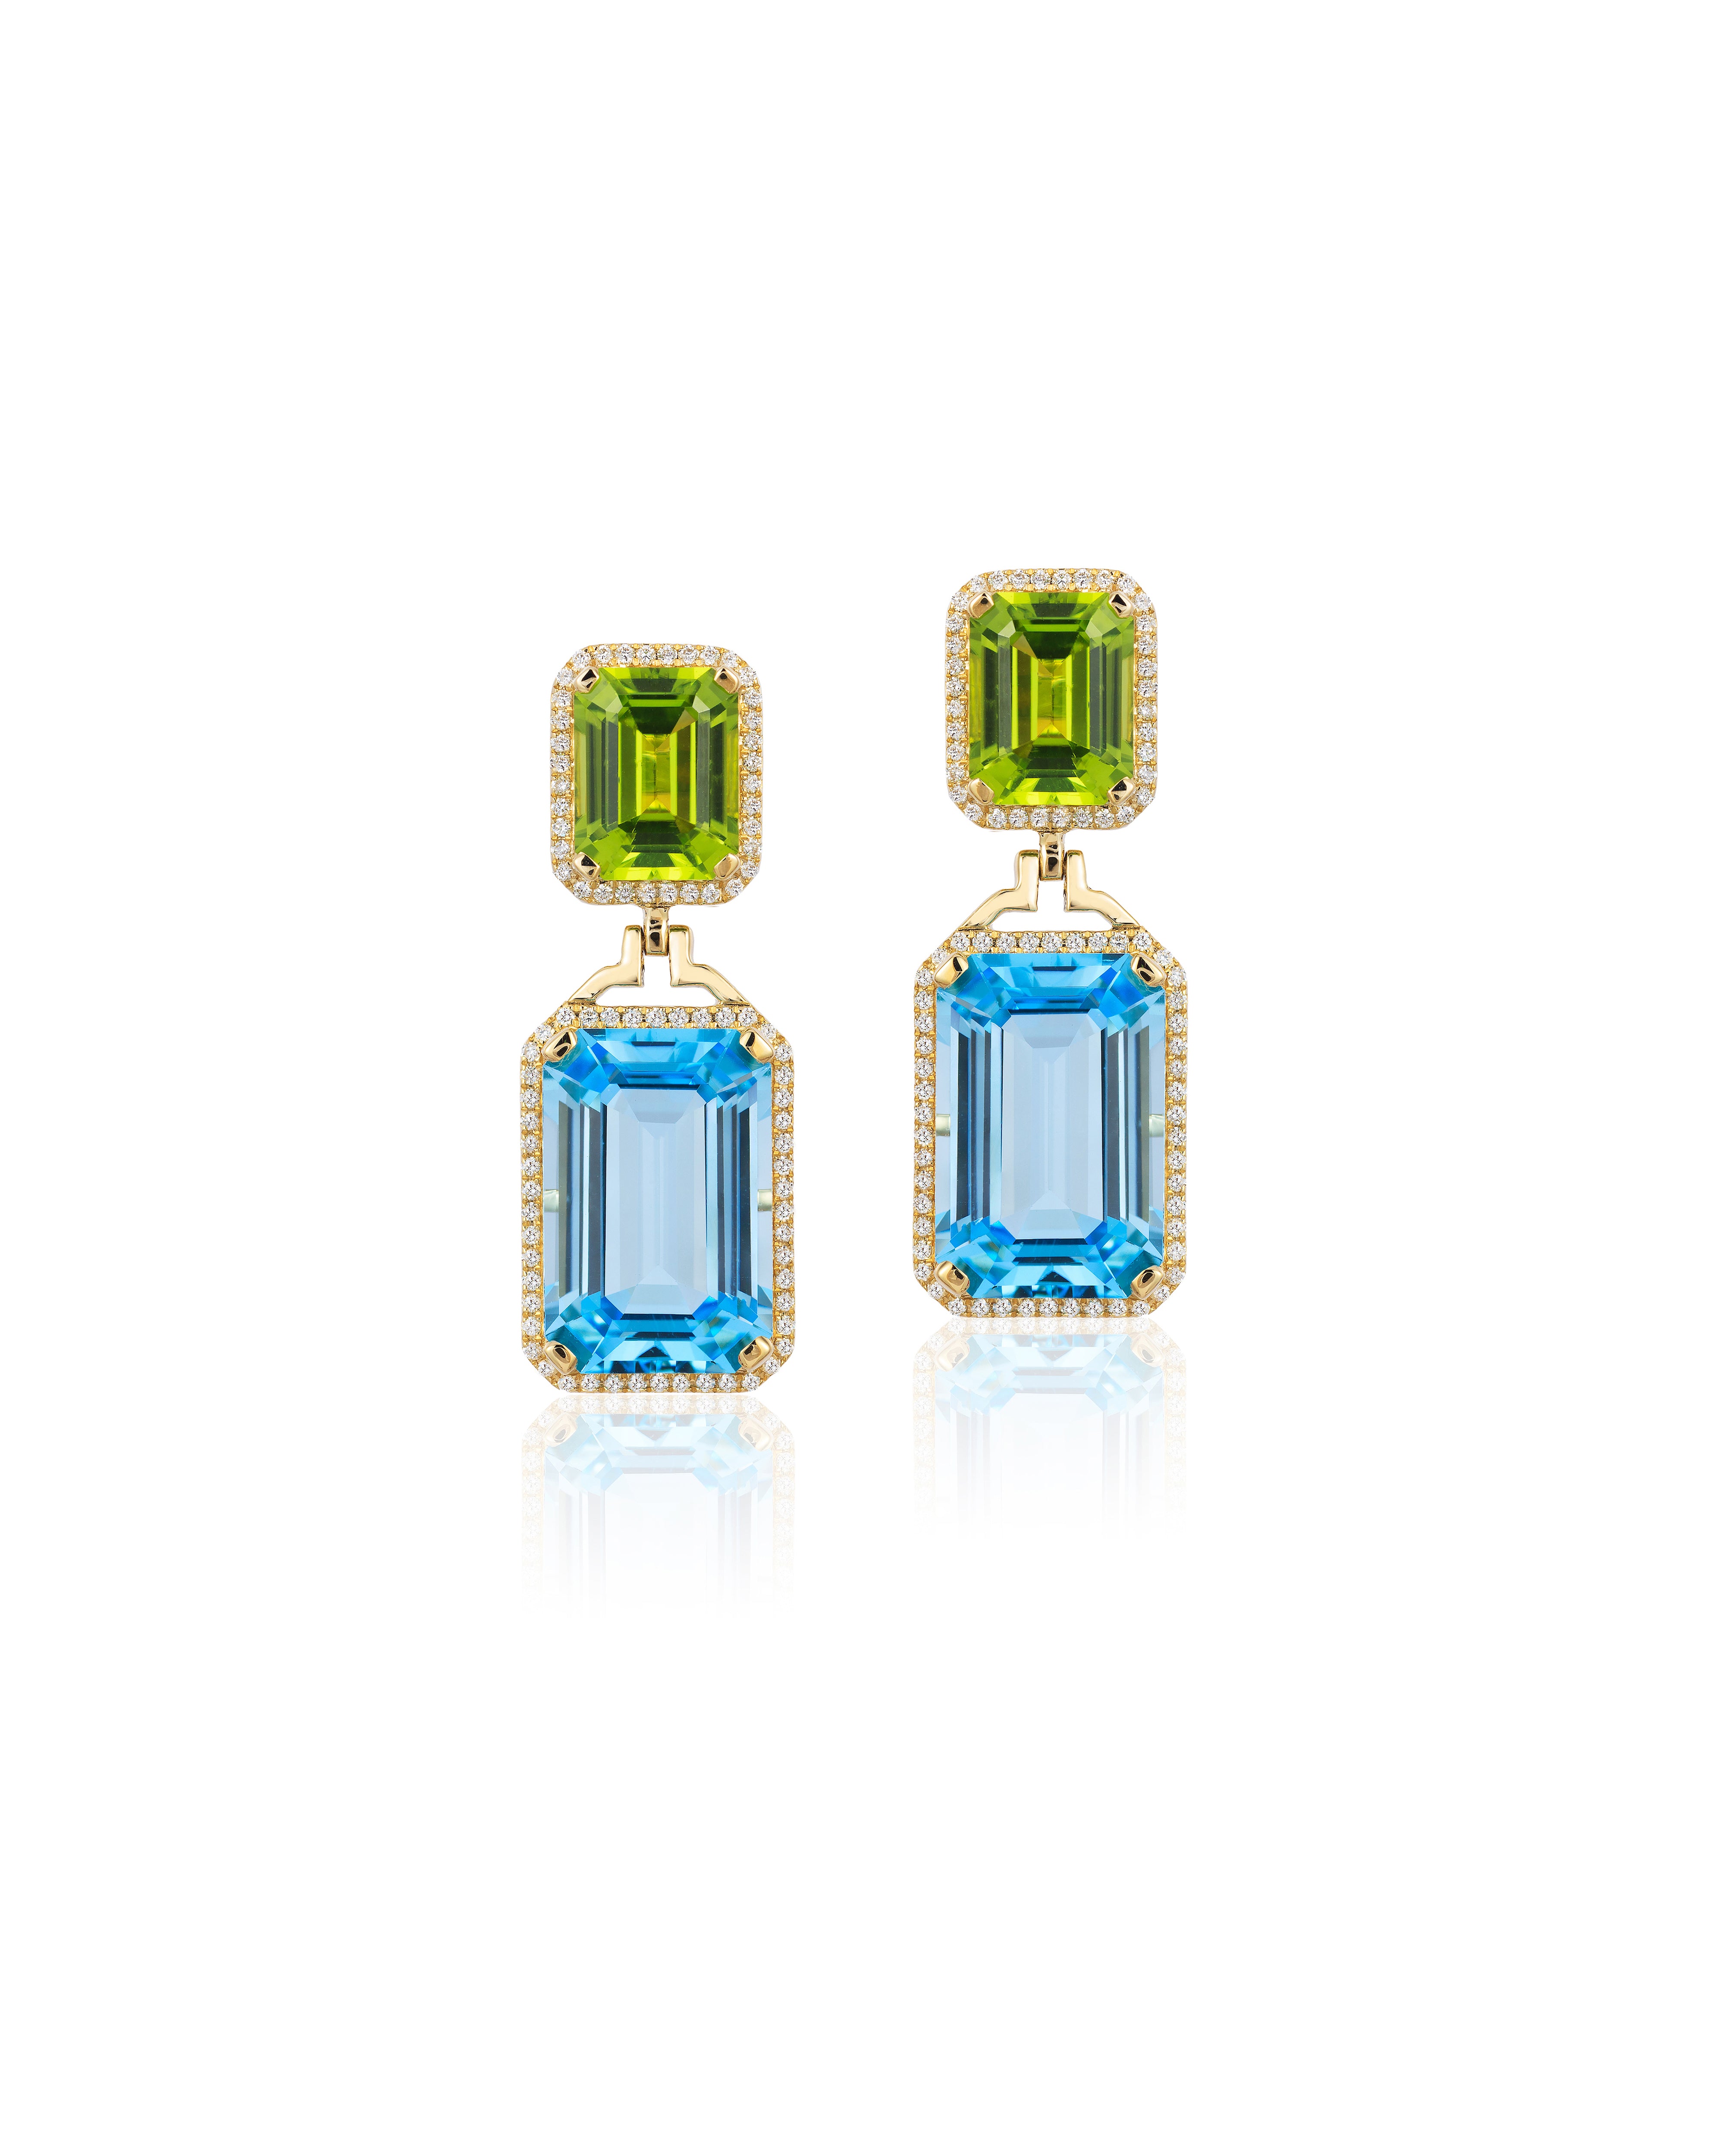 Gossip Blue Topaz-Peridot Emerald Cut Earrings Earrings Goshwara   